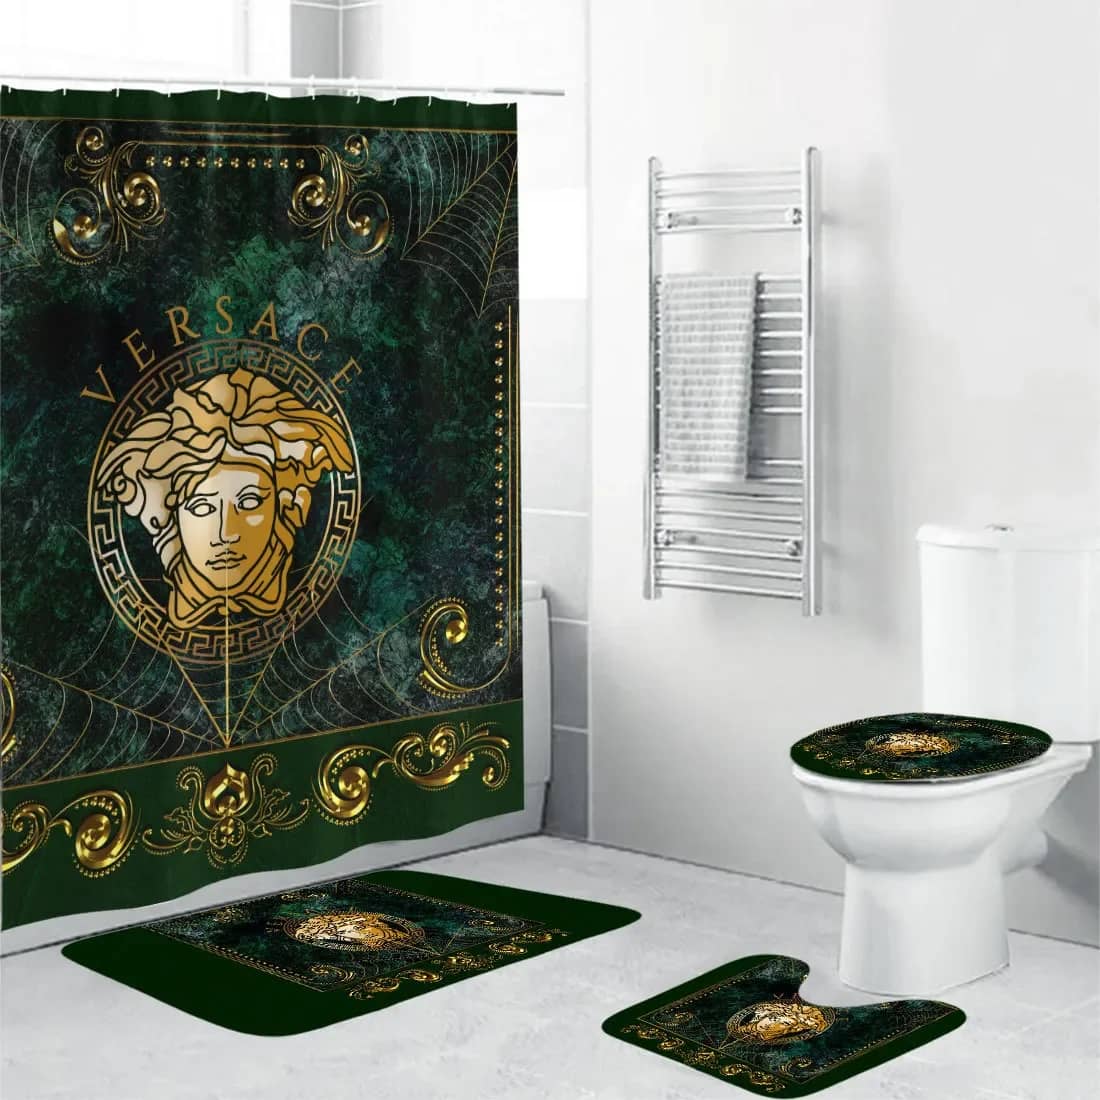 Versace Medusa Luxury Brand Premium Bathroom Sets